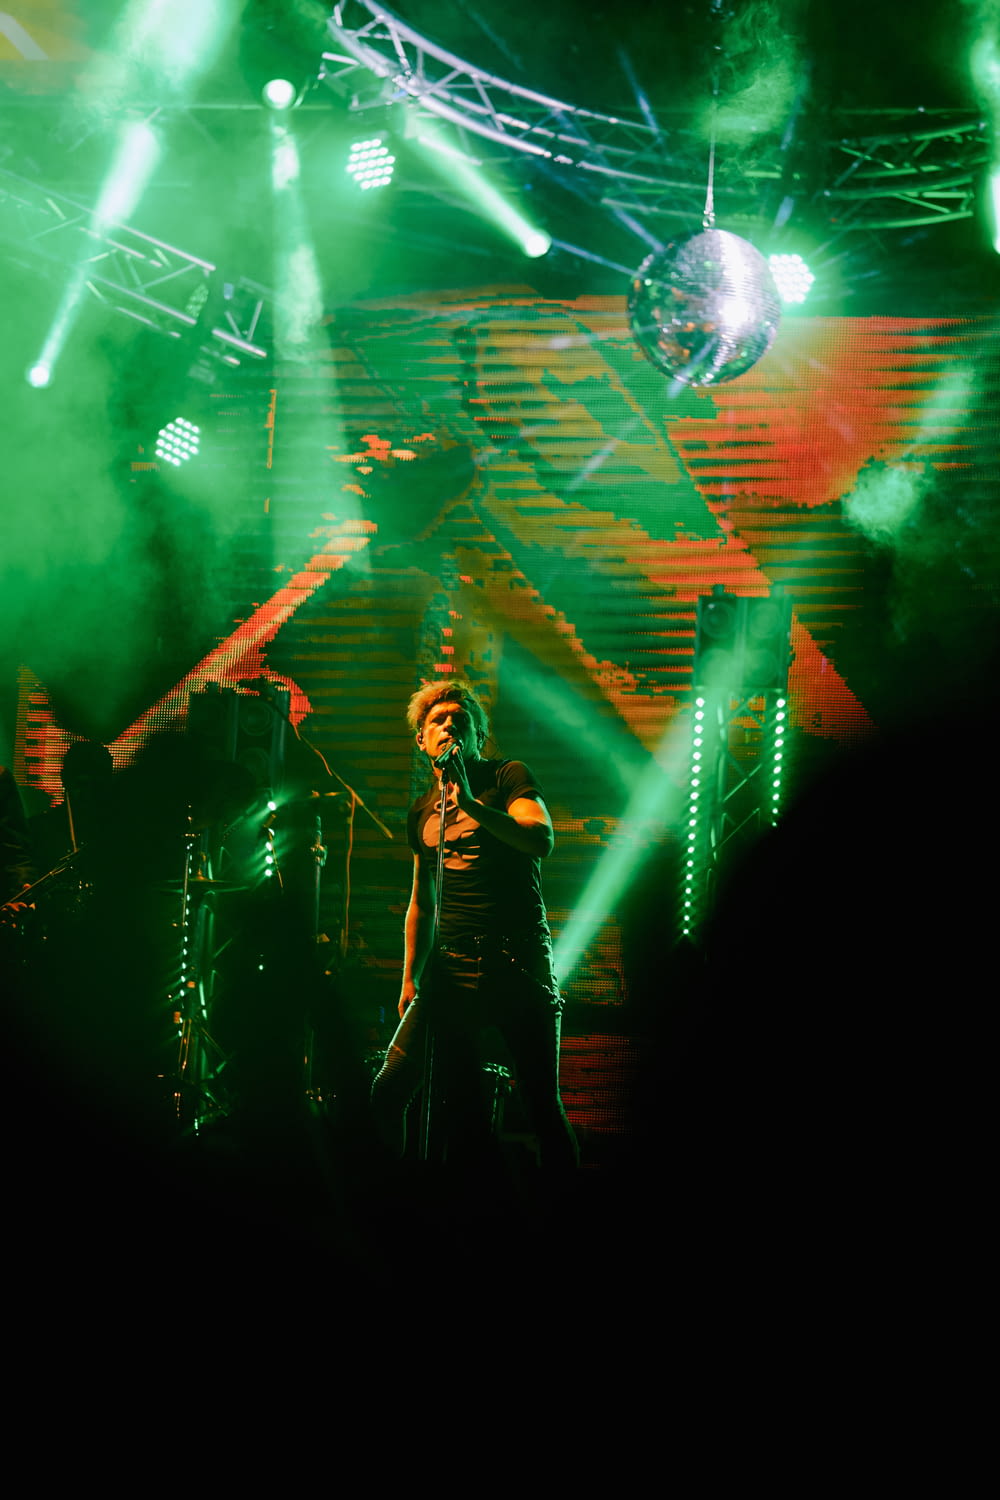 man in black jacket singing on stage